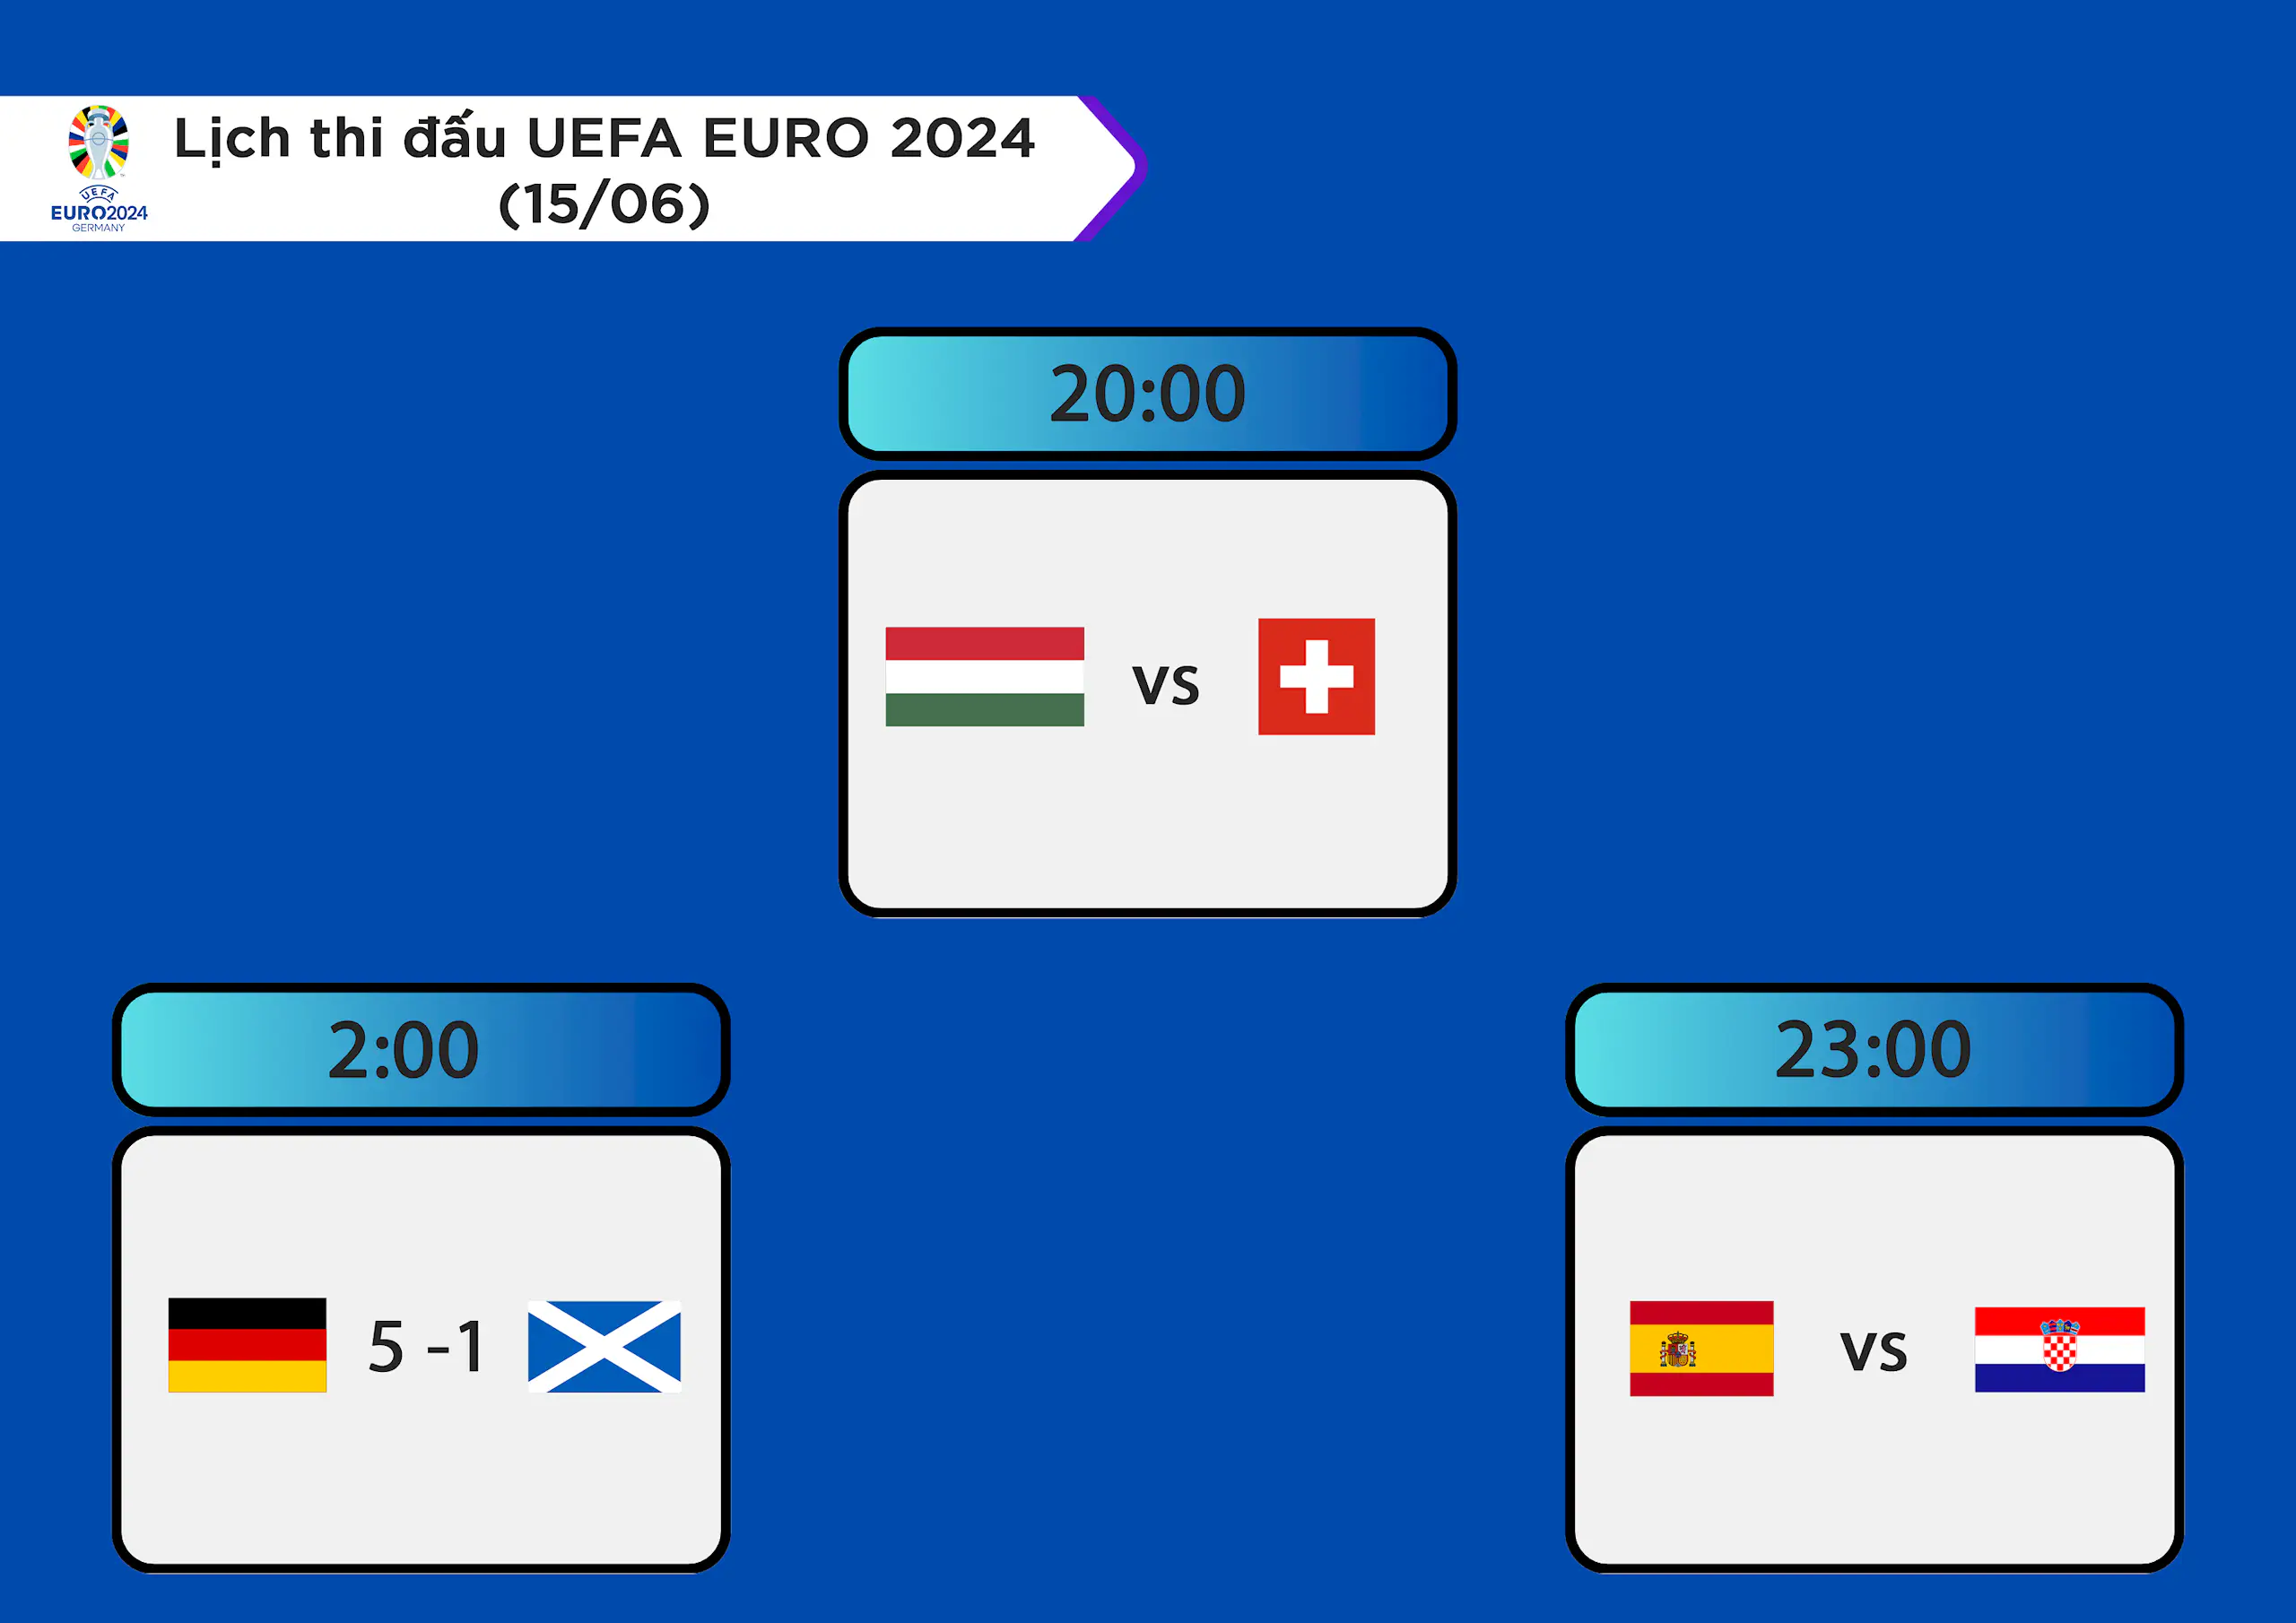 Lịch thi đấu UEFA EURO 2024 ngày 15/06